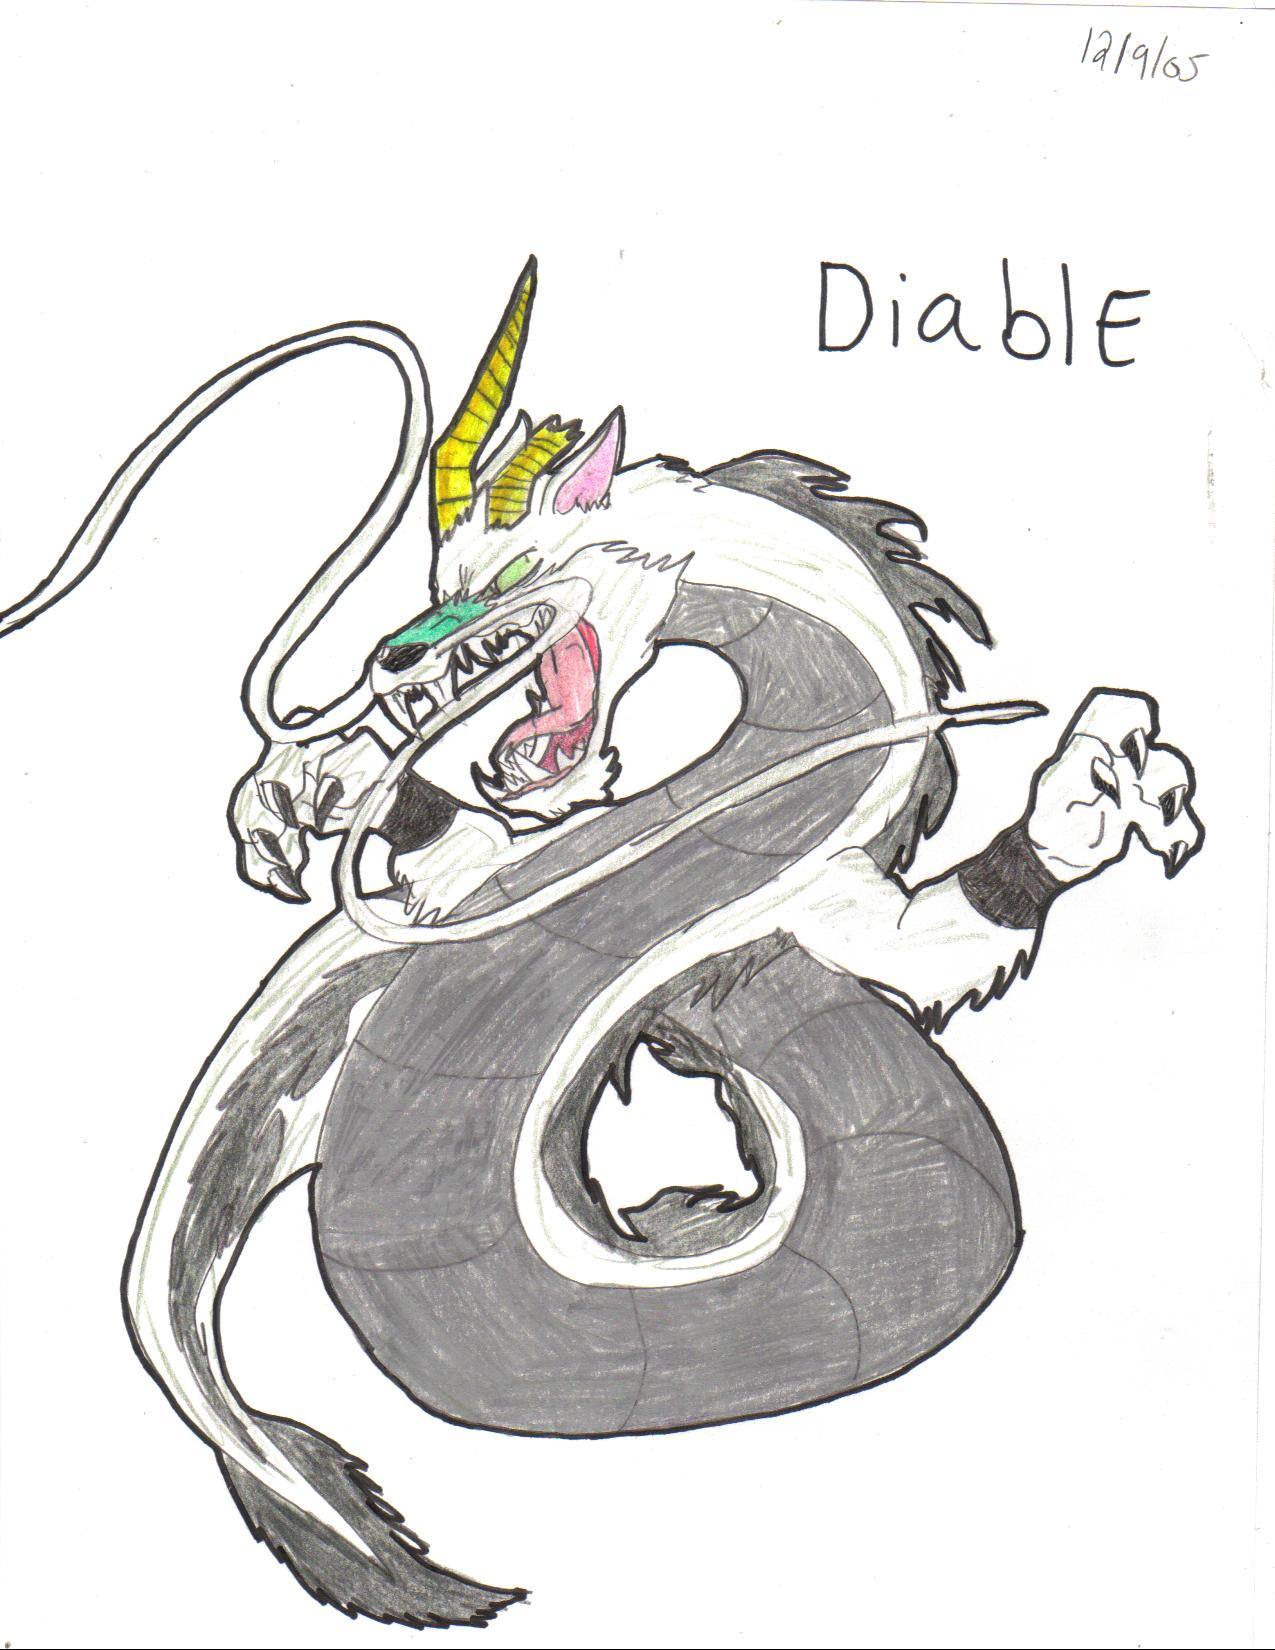 Diable by crocdragon89